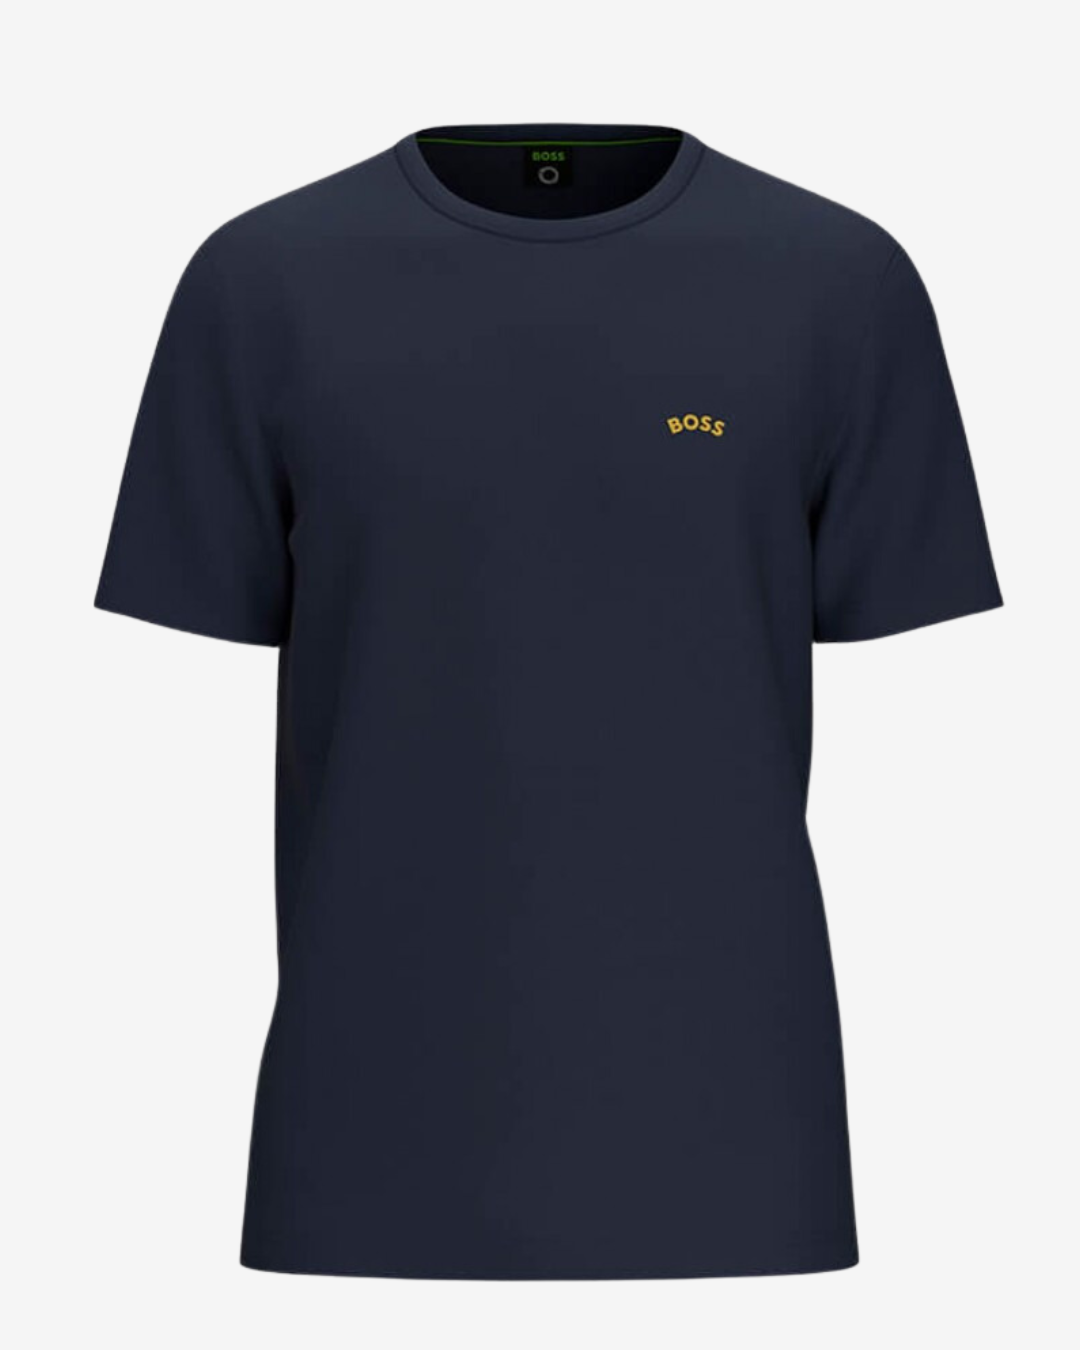 Billede af Hugo Boss Curved logo t-shirt - Navy / Guld - Str. L - Modish.dk